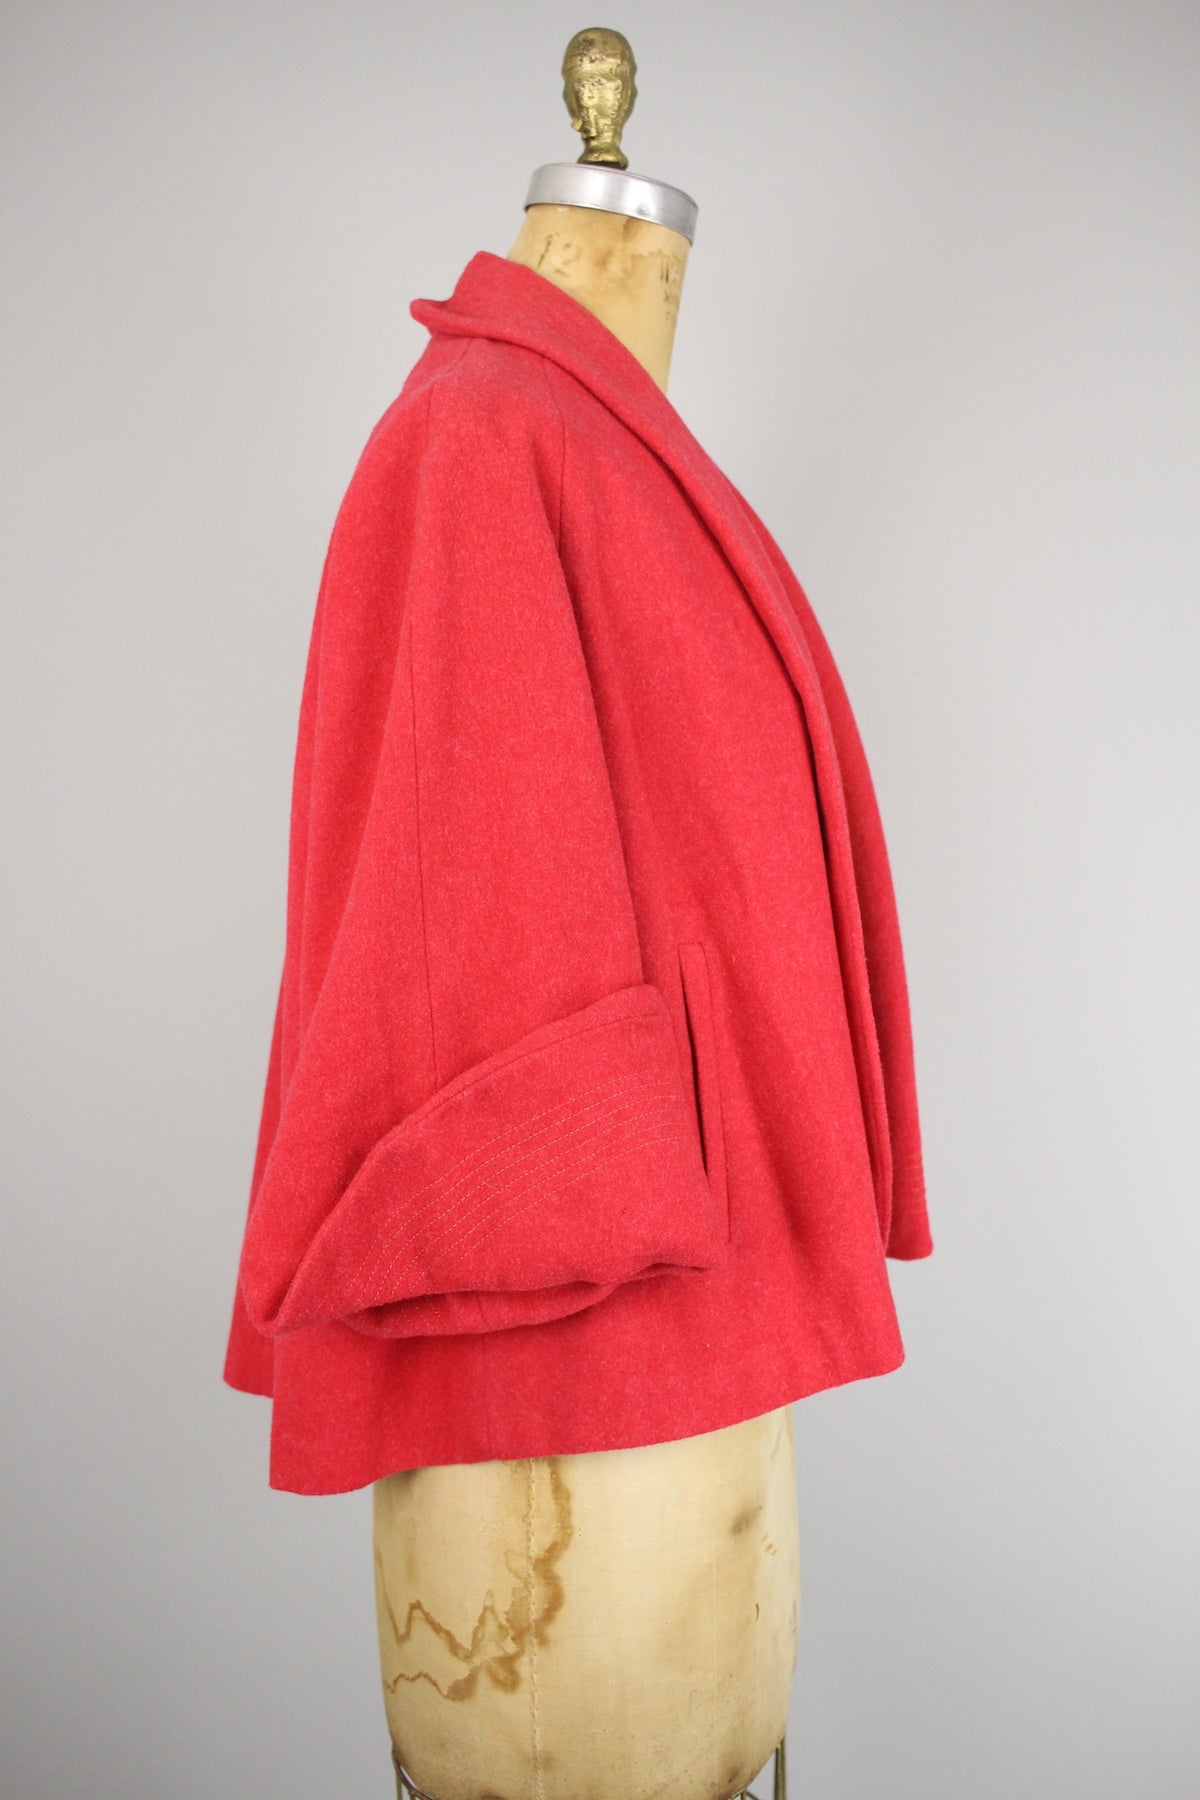 Rare 1950s Melon Red Swing Coat